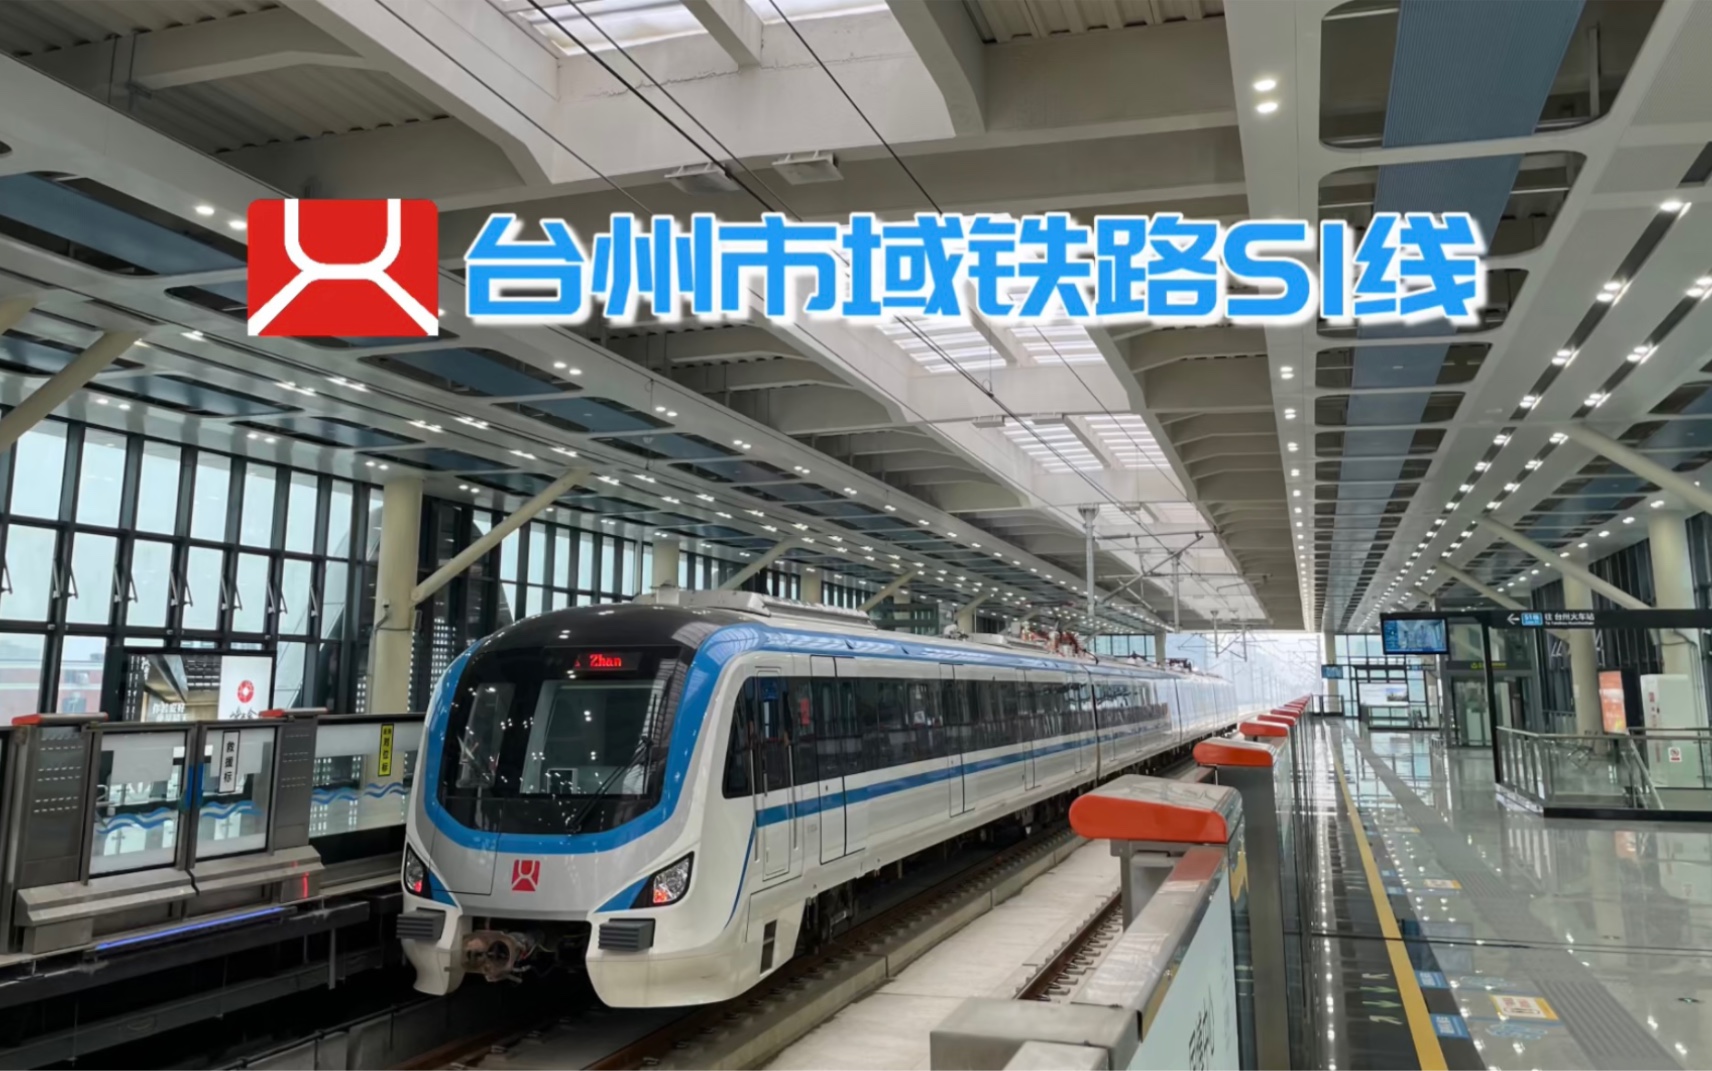 【台州市域铁路】城际新交通 市域铁路s1线开通首日简单体验 列车运行